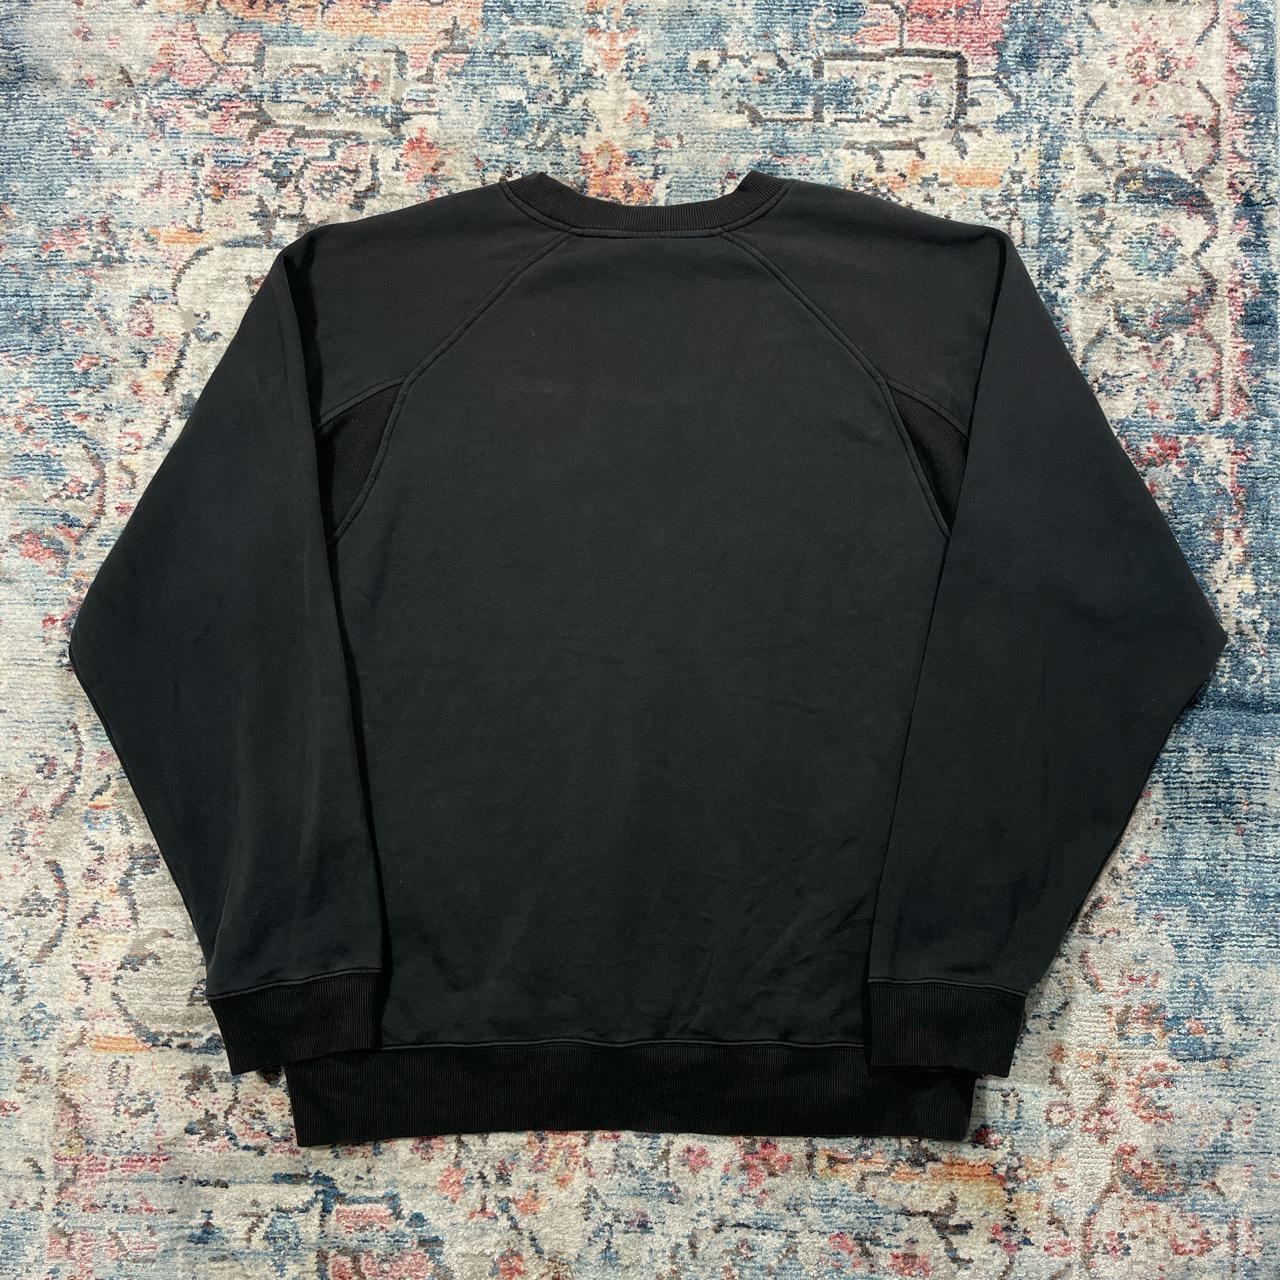 Vintage Adidas Black Sweatshirt